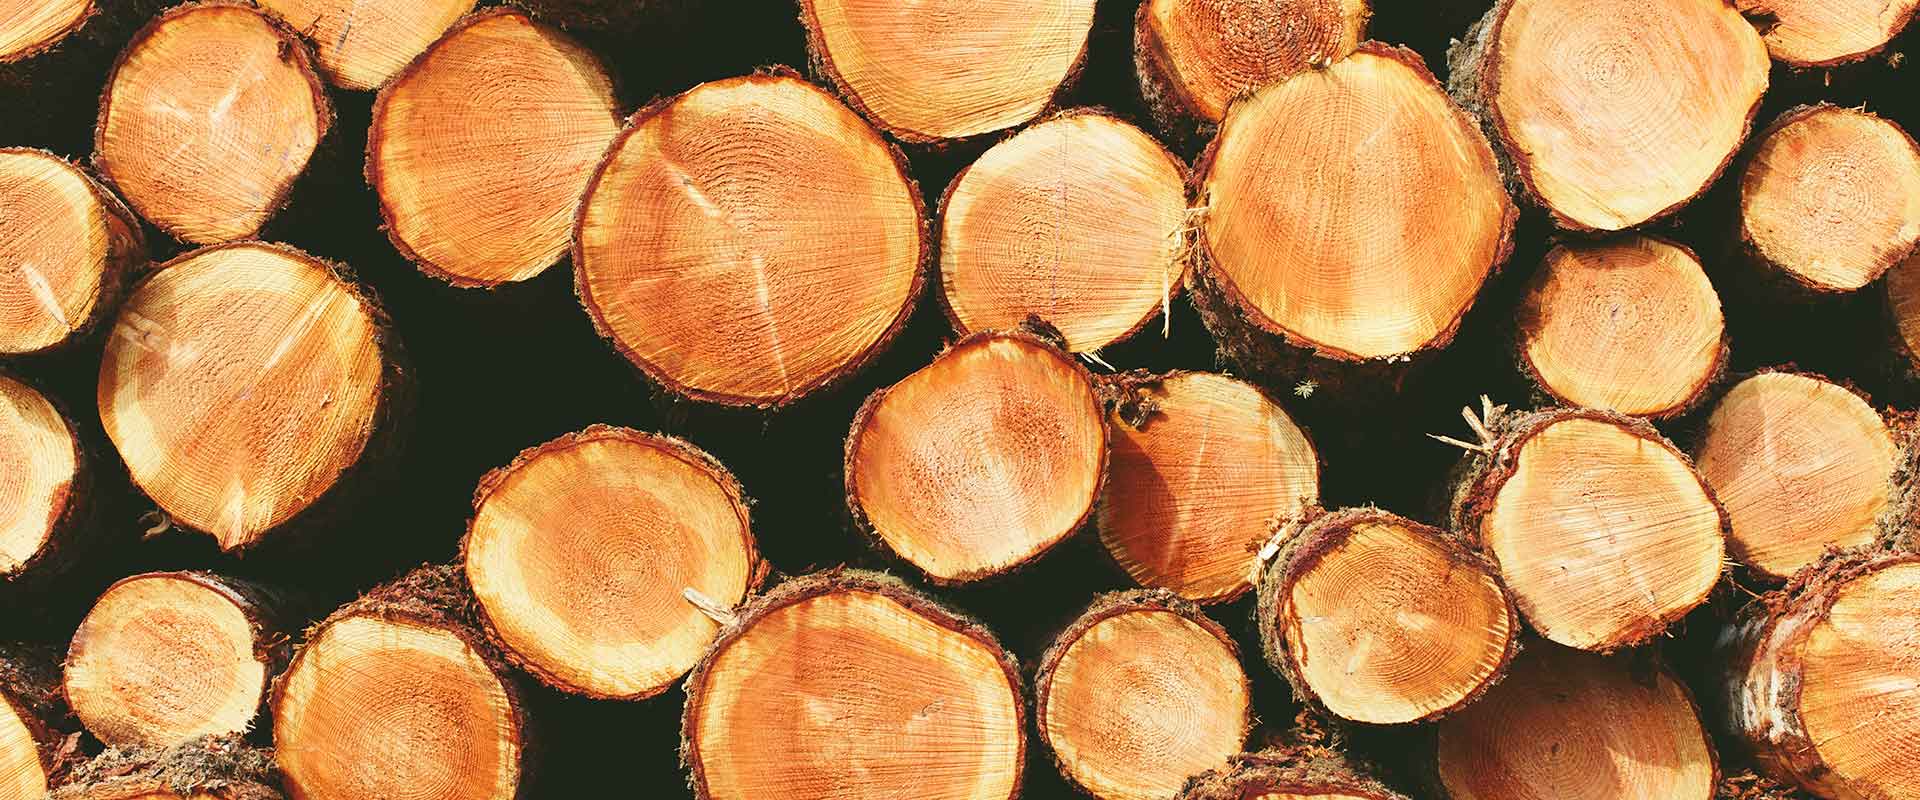 spruce-timber-frame-kiln-dried-1920x800